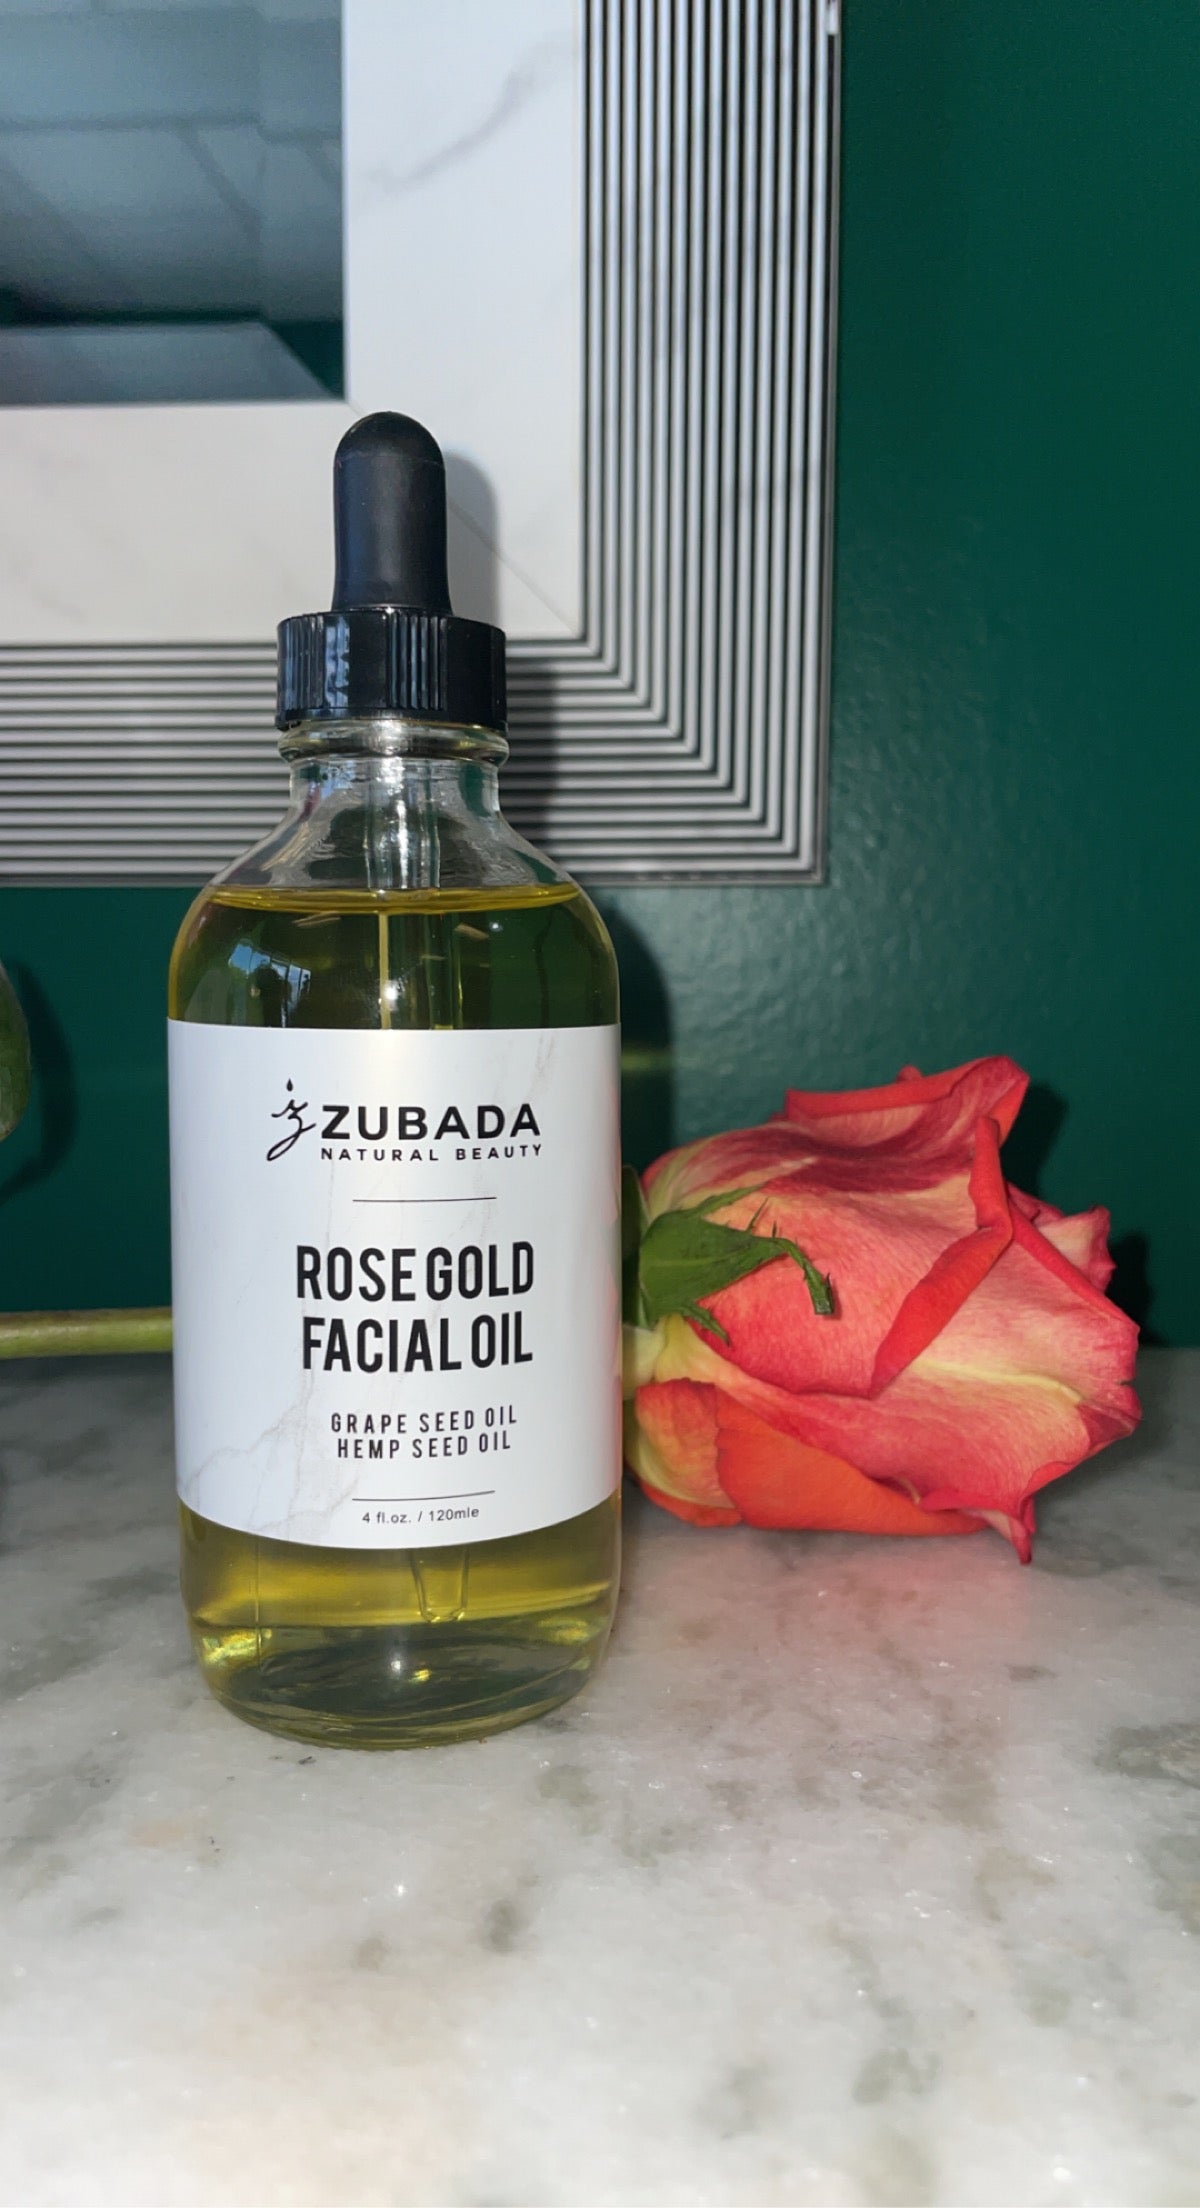 Zubada’s Rose Gold Facial Oil 2oz